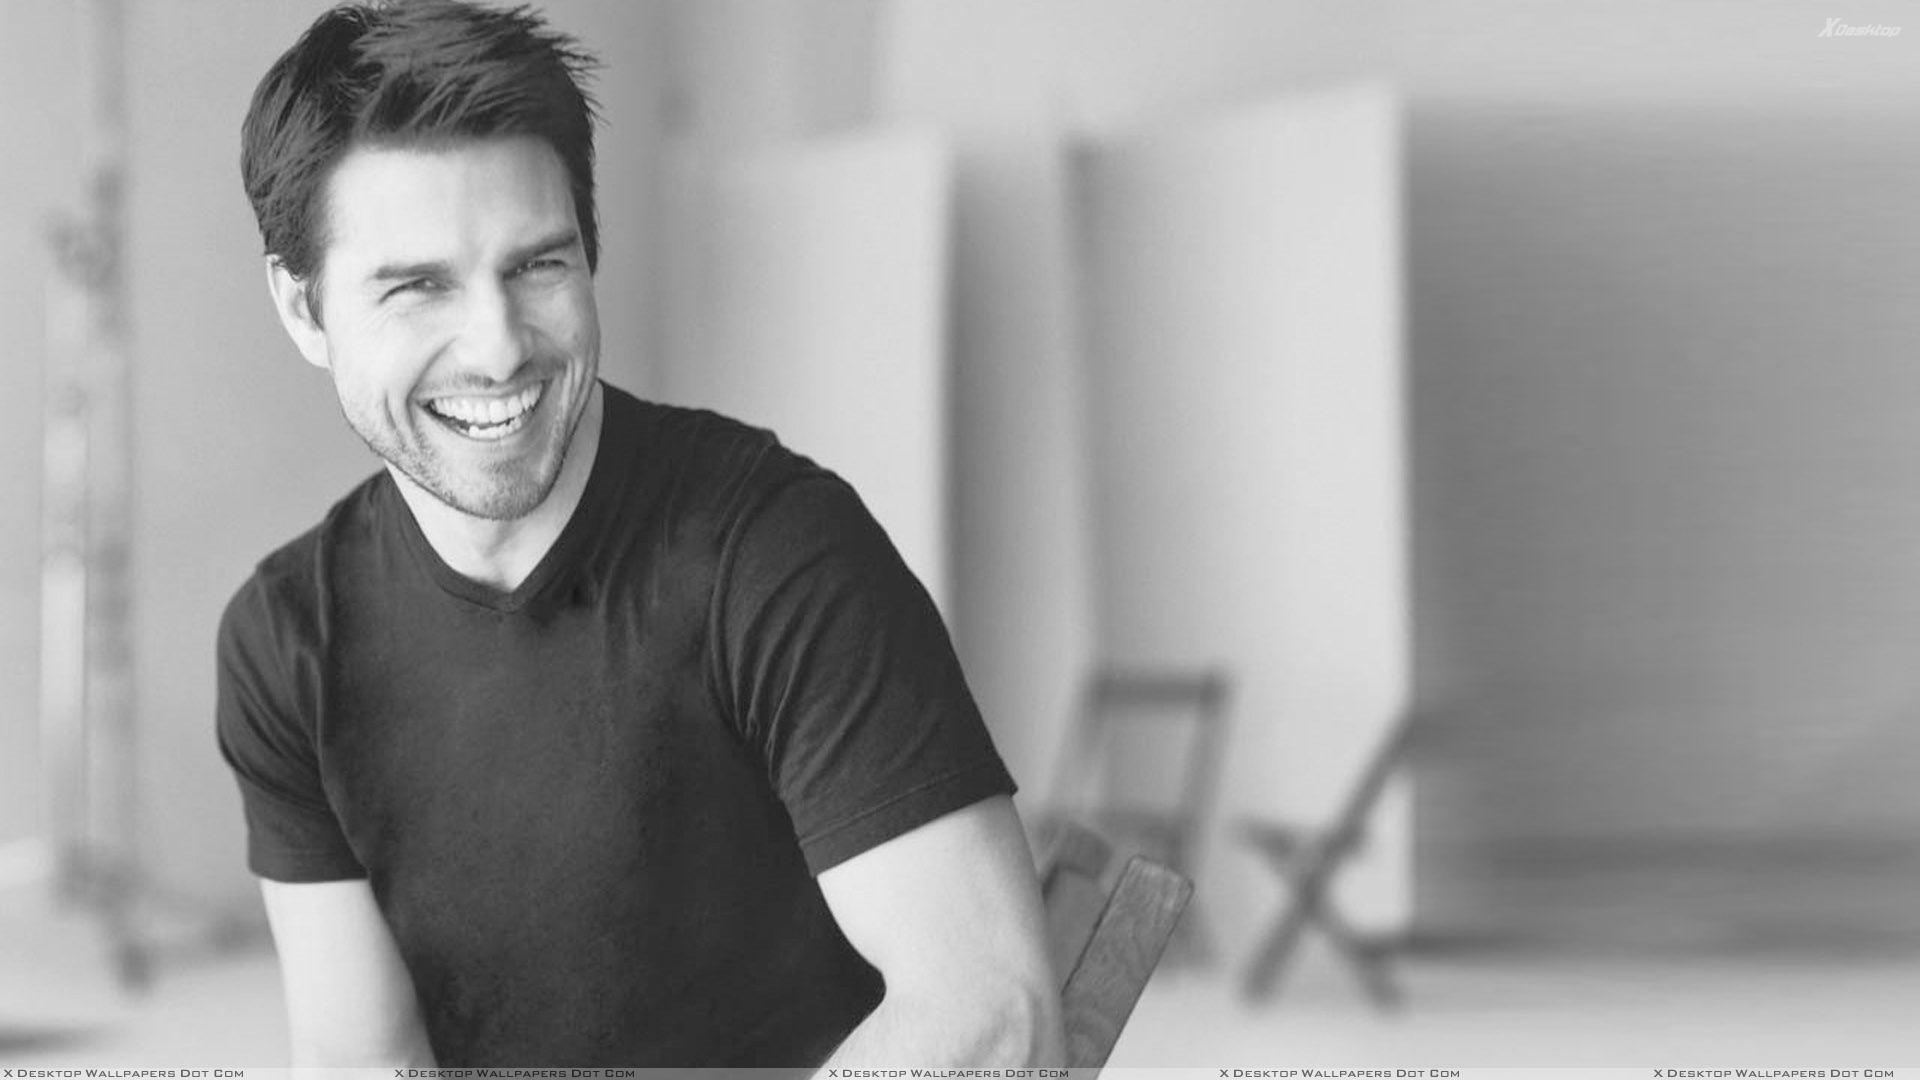 Tom Cruise Laughing Black N White Sitting Photohoot Wallpaper